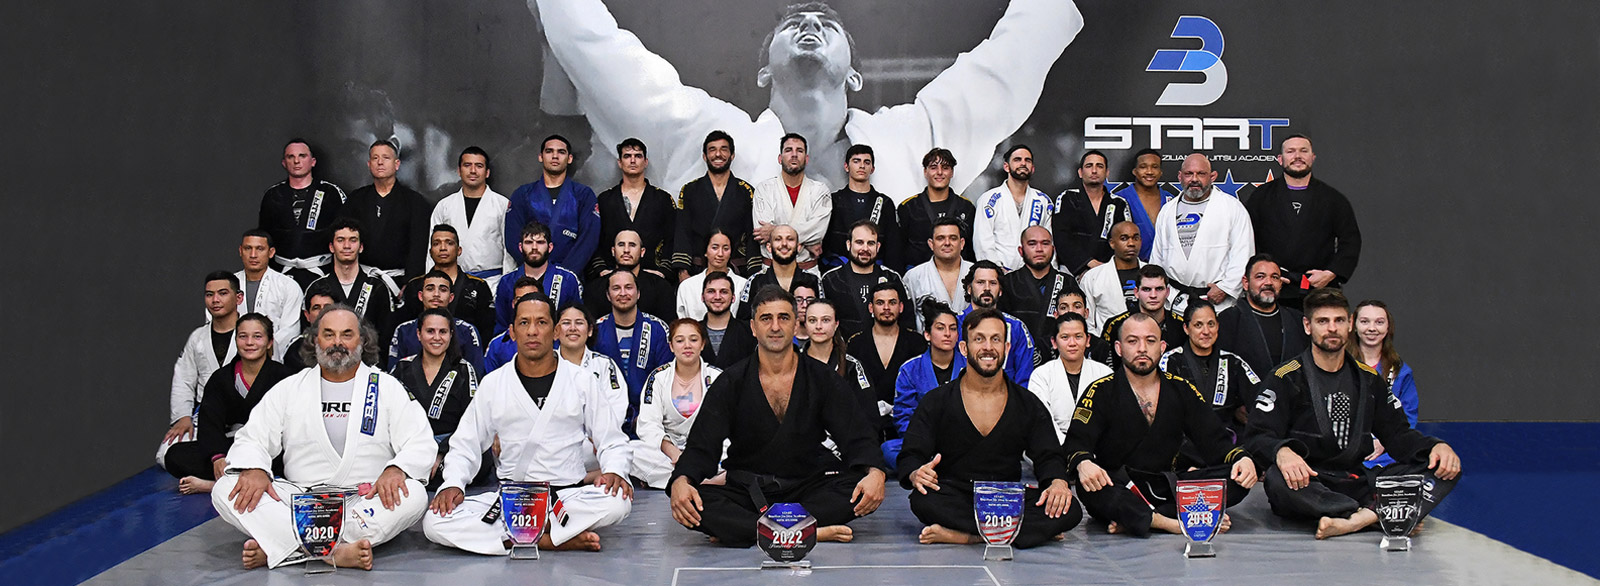 START Jiu-Jitsu – Brazilian Jiu-Jitsu Academy in Pembroke Pines